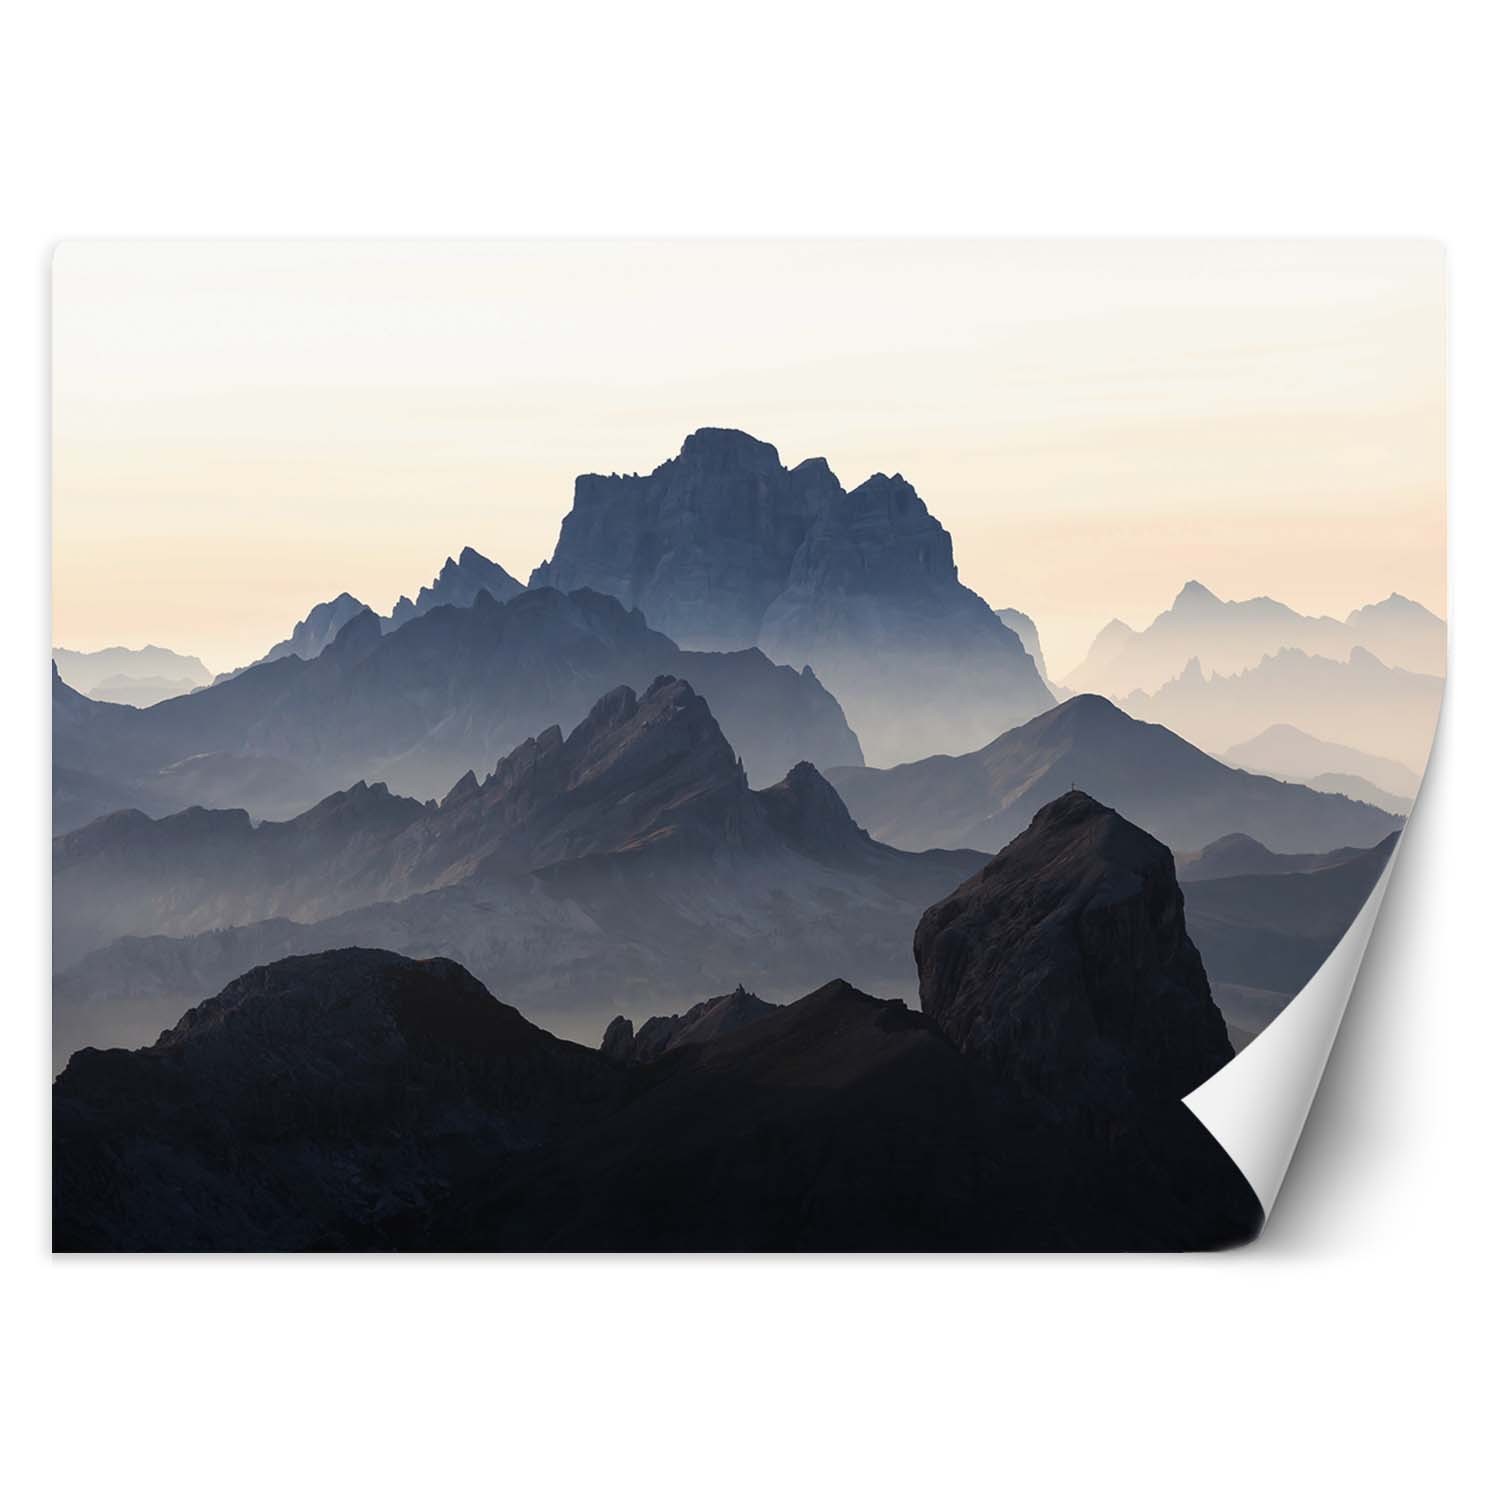 Trend24 – Behang – Bergen In De Mist – Vliesbehang – Fotobehang Natuur – Behang Woonkamer – 450x315x2 cm – Incl. behanglijm